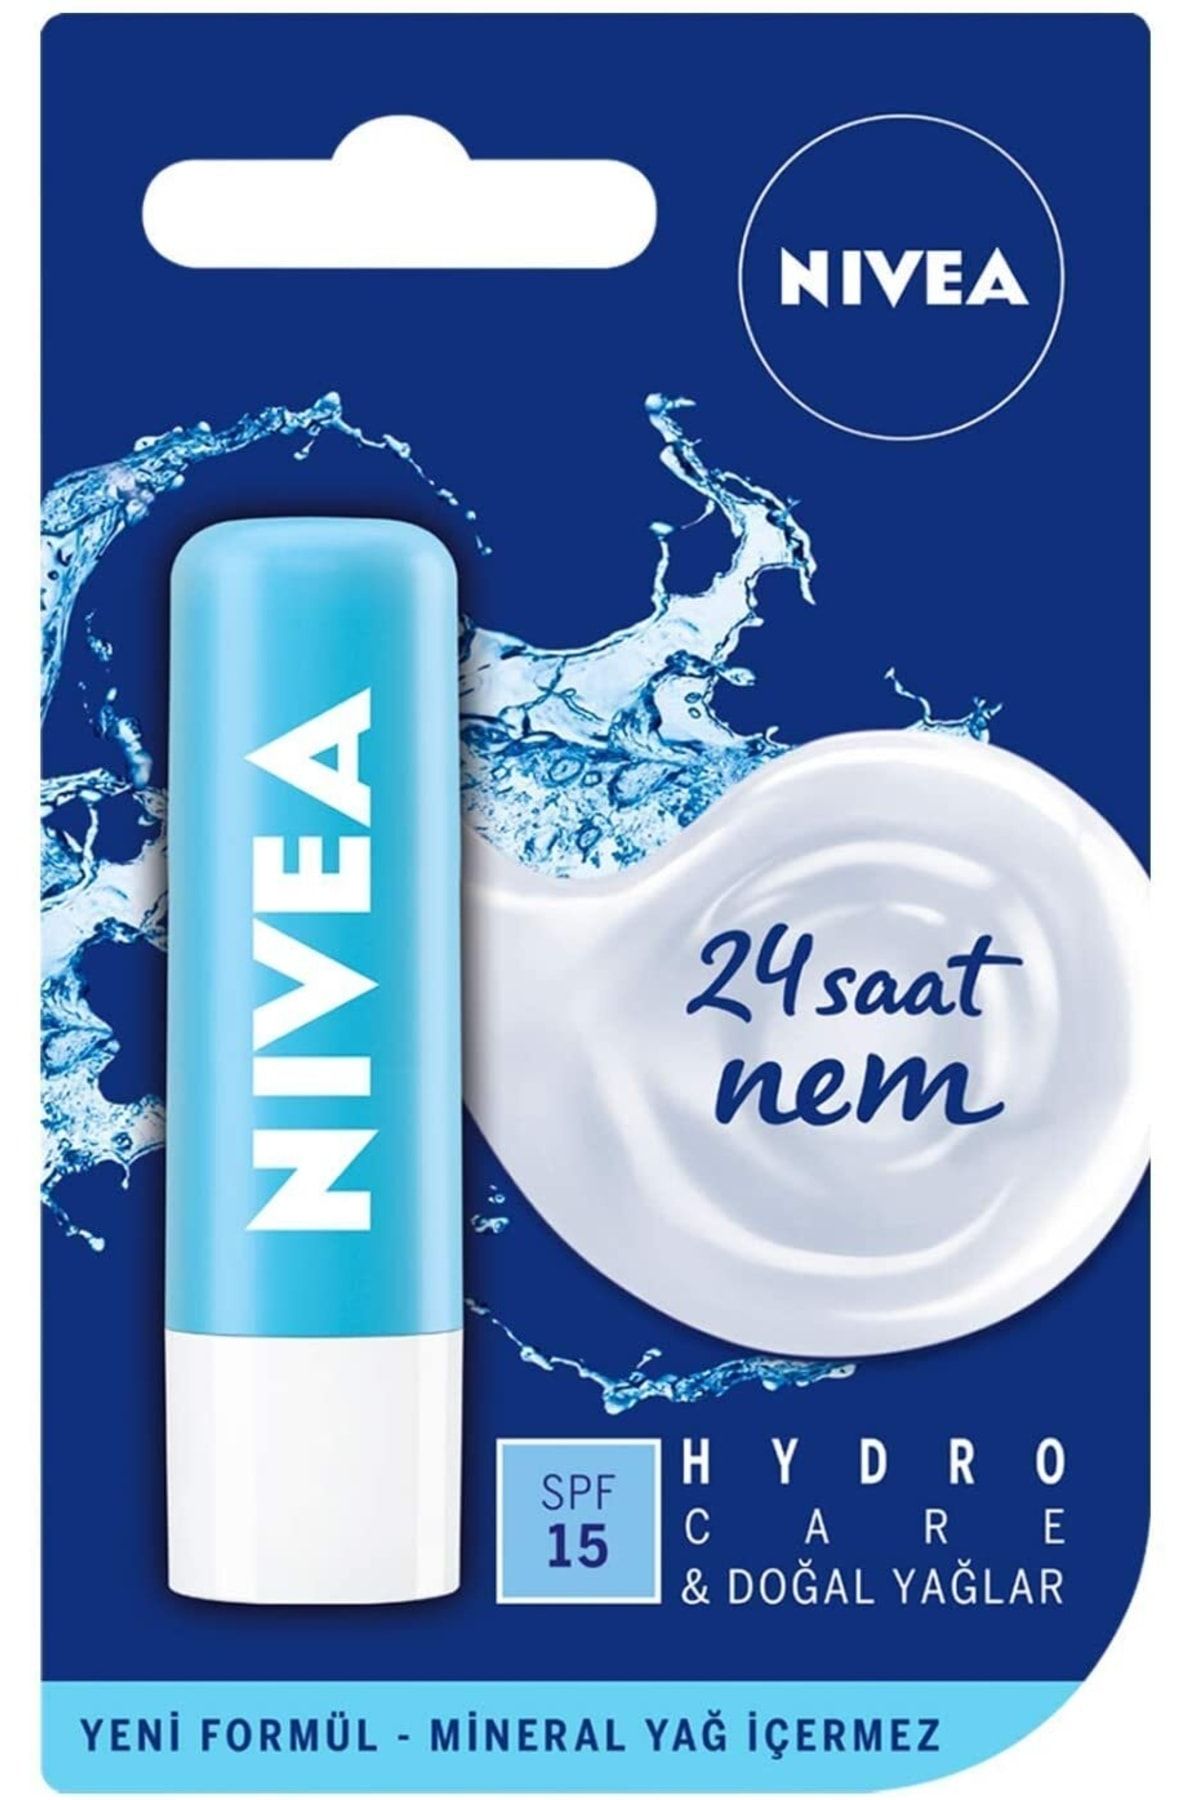 NIVEA Hydro Care Dudak Bakım Kremi (4,8 Gr), 24 Saat Nem, Aloe Vera, Saf Su Ve Doğal